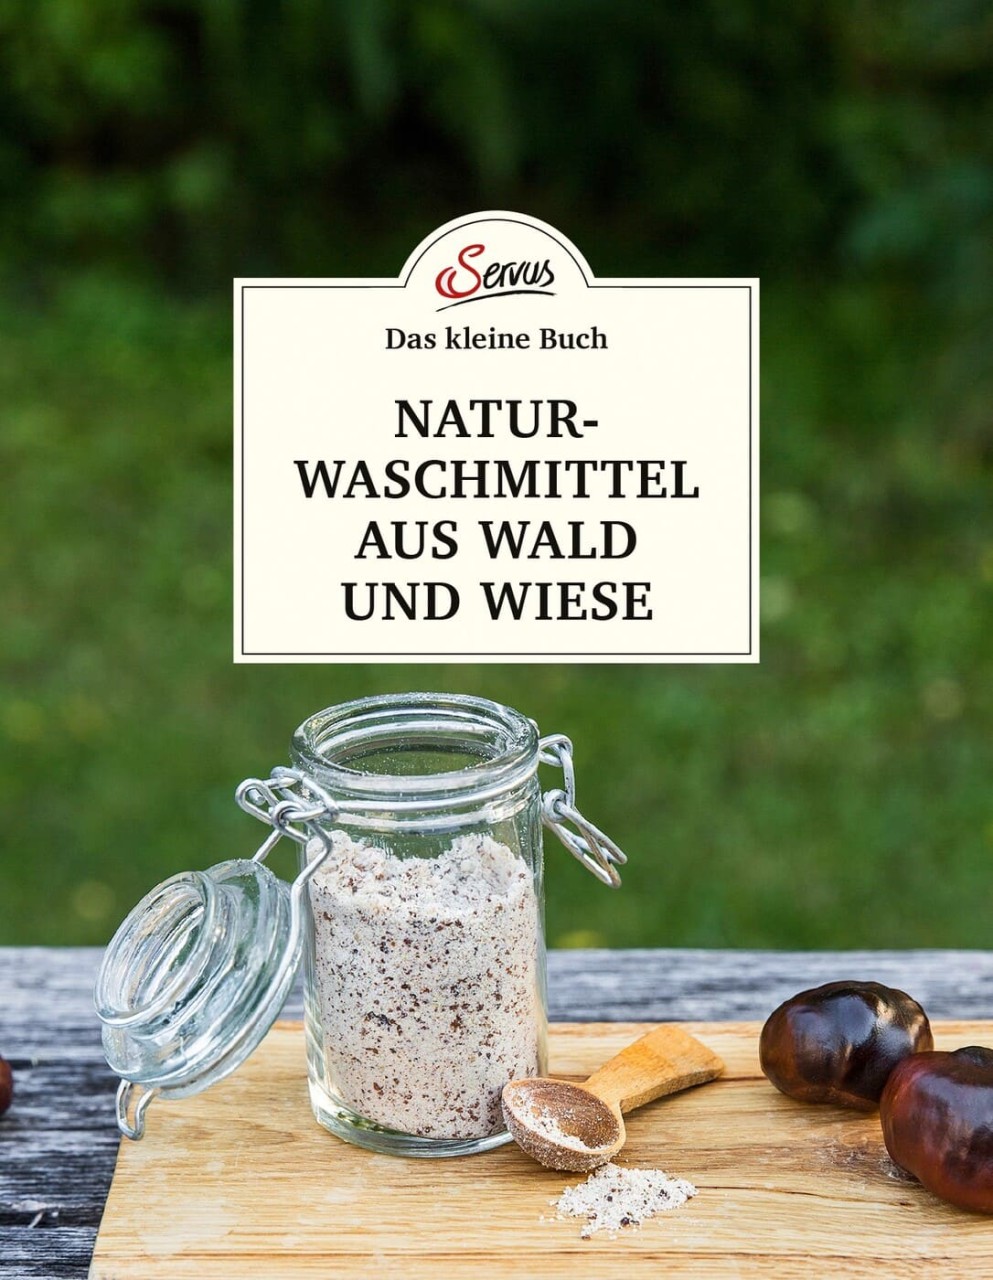 Das große kleine Buch: Naturwaschmittel aus Wald und Wiese von Servus Verlag